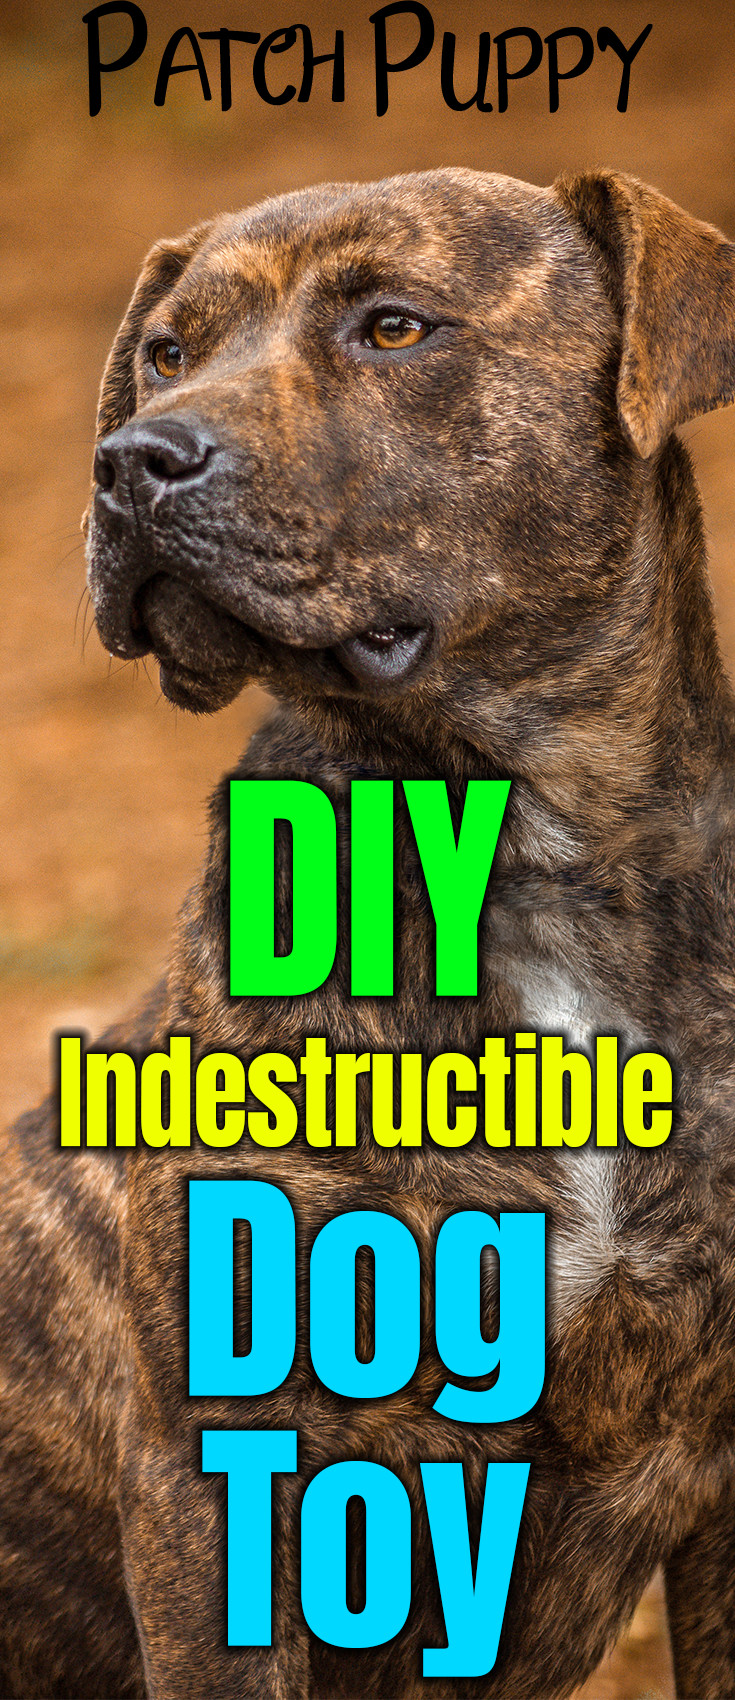 DIY Indestructible Dog Toys
 Sweet Potato Dog Treats on a Rope DIY Indestructible Dog